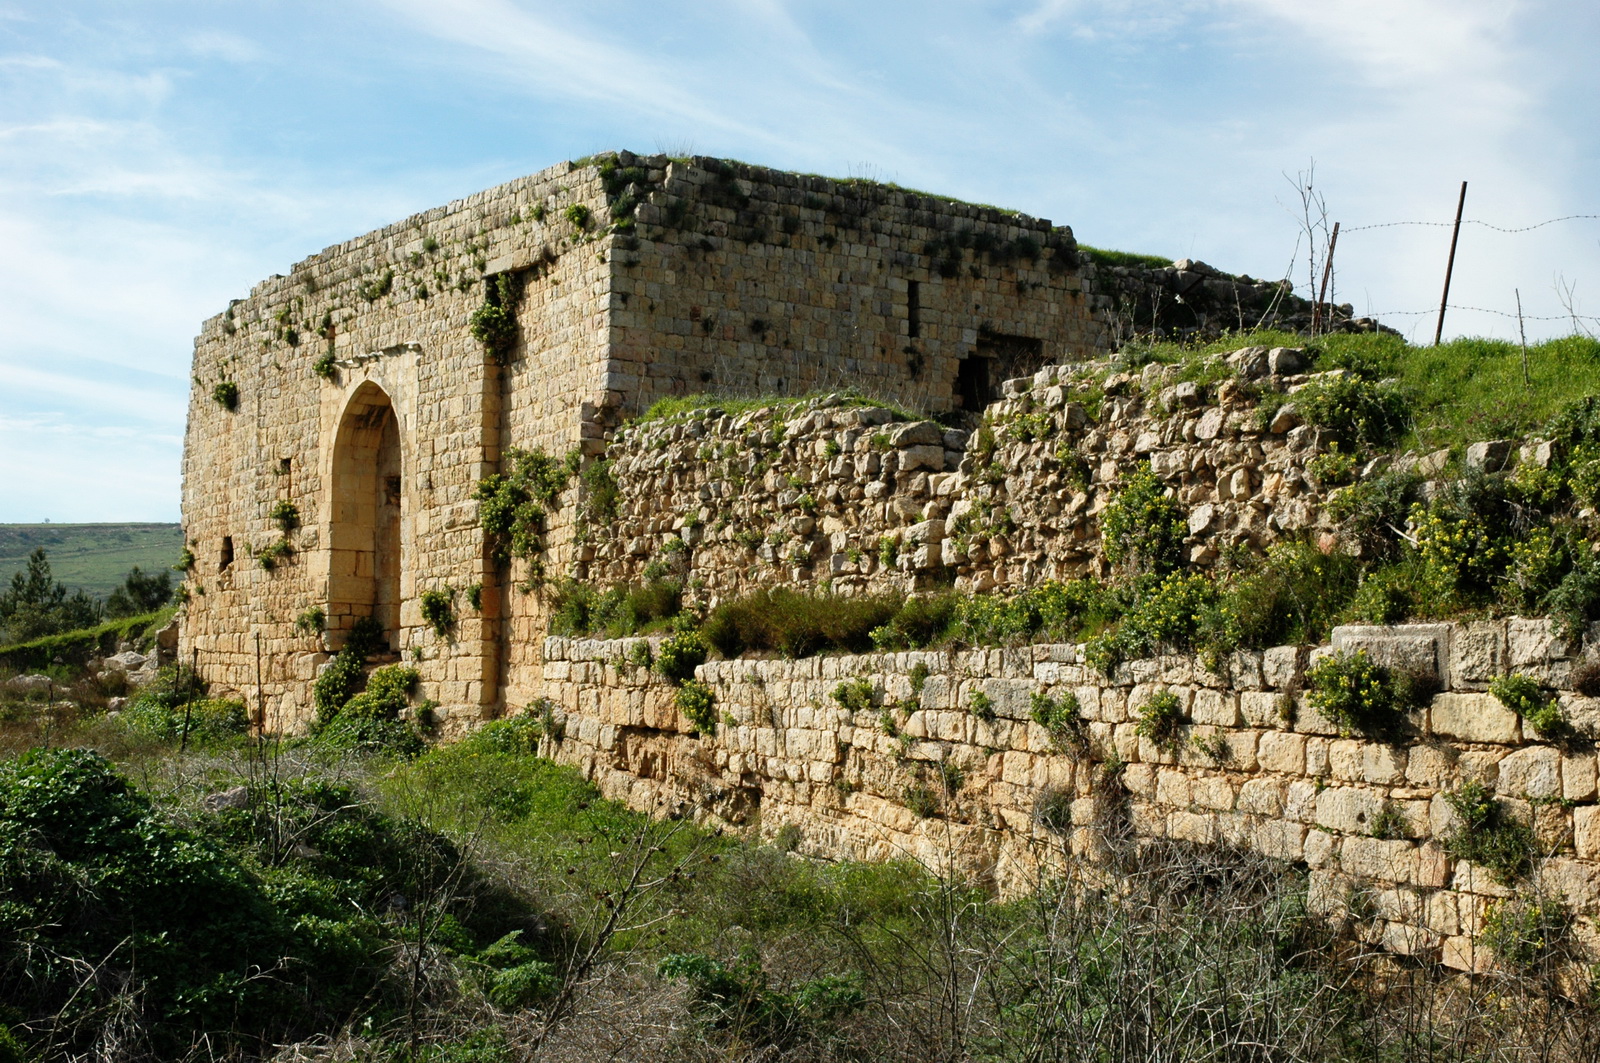 גליל עליון - מצודת הונין - מבצר צלבני במרגליות - מבט אל המבנה כולו